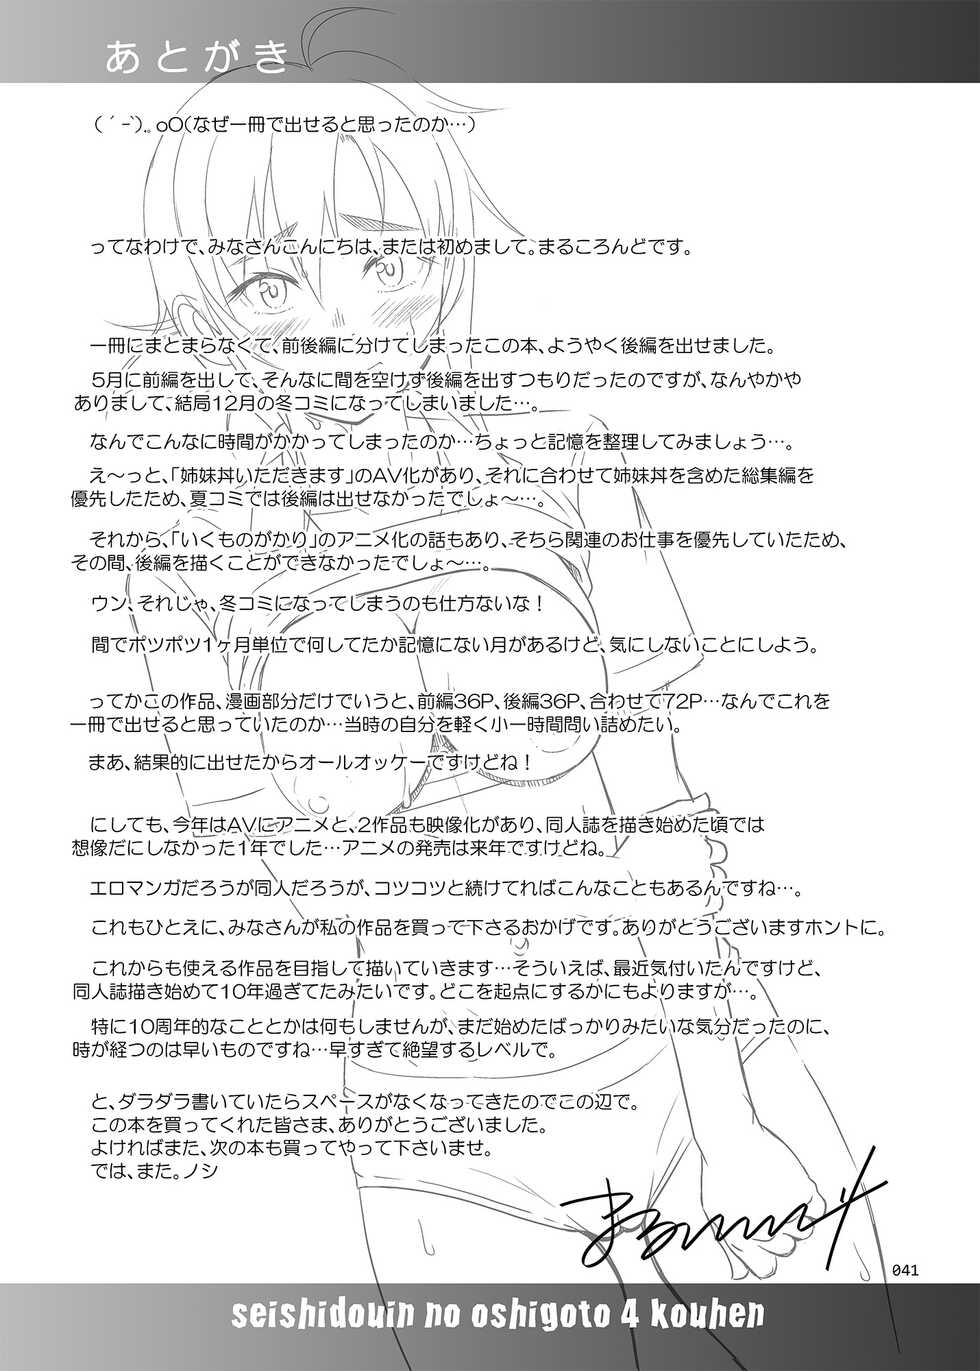 [antyuumosaku (malcorond)] Seishidouin no Oshigoto 4 Kohen Rippana Benki ni Sodatta node Daimanzoku de Shidou wo Oeta - Page 40